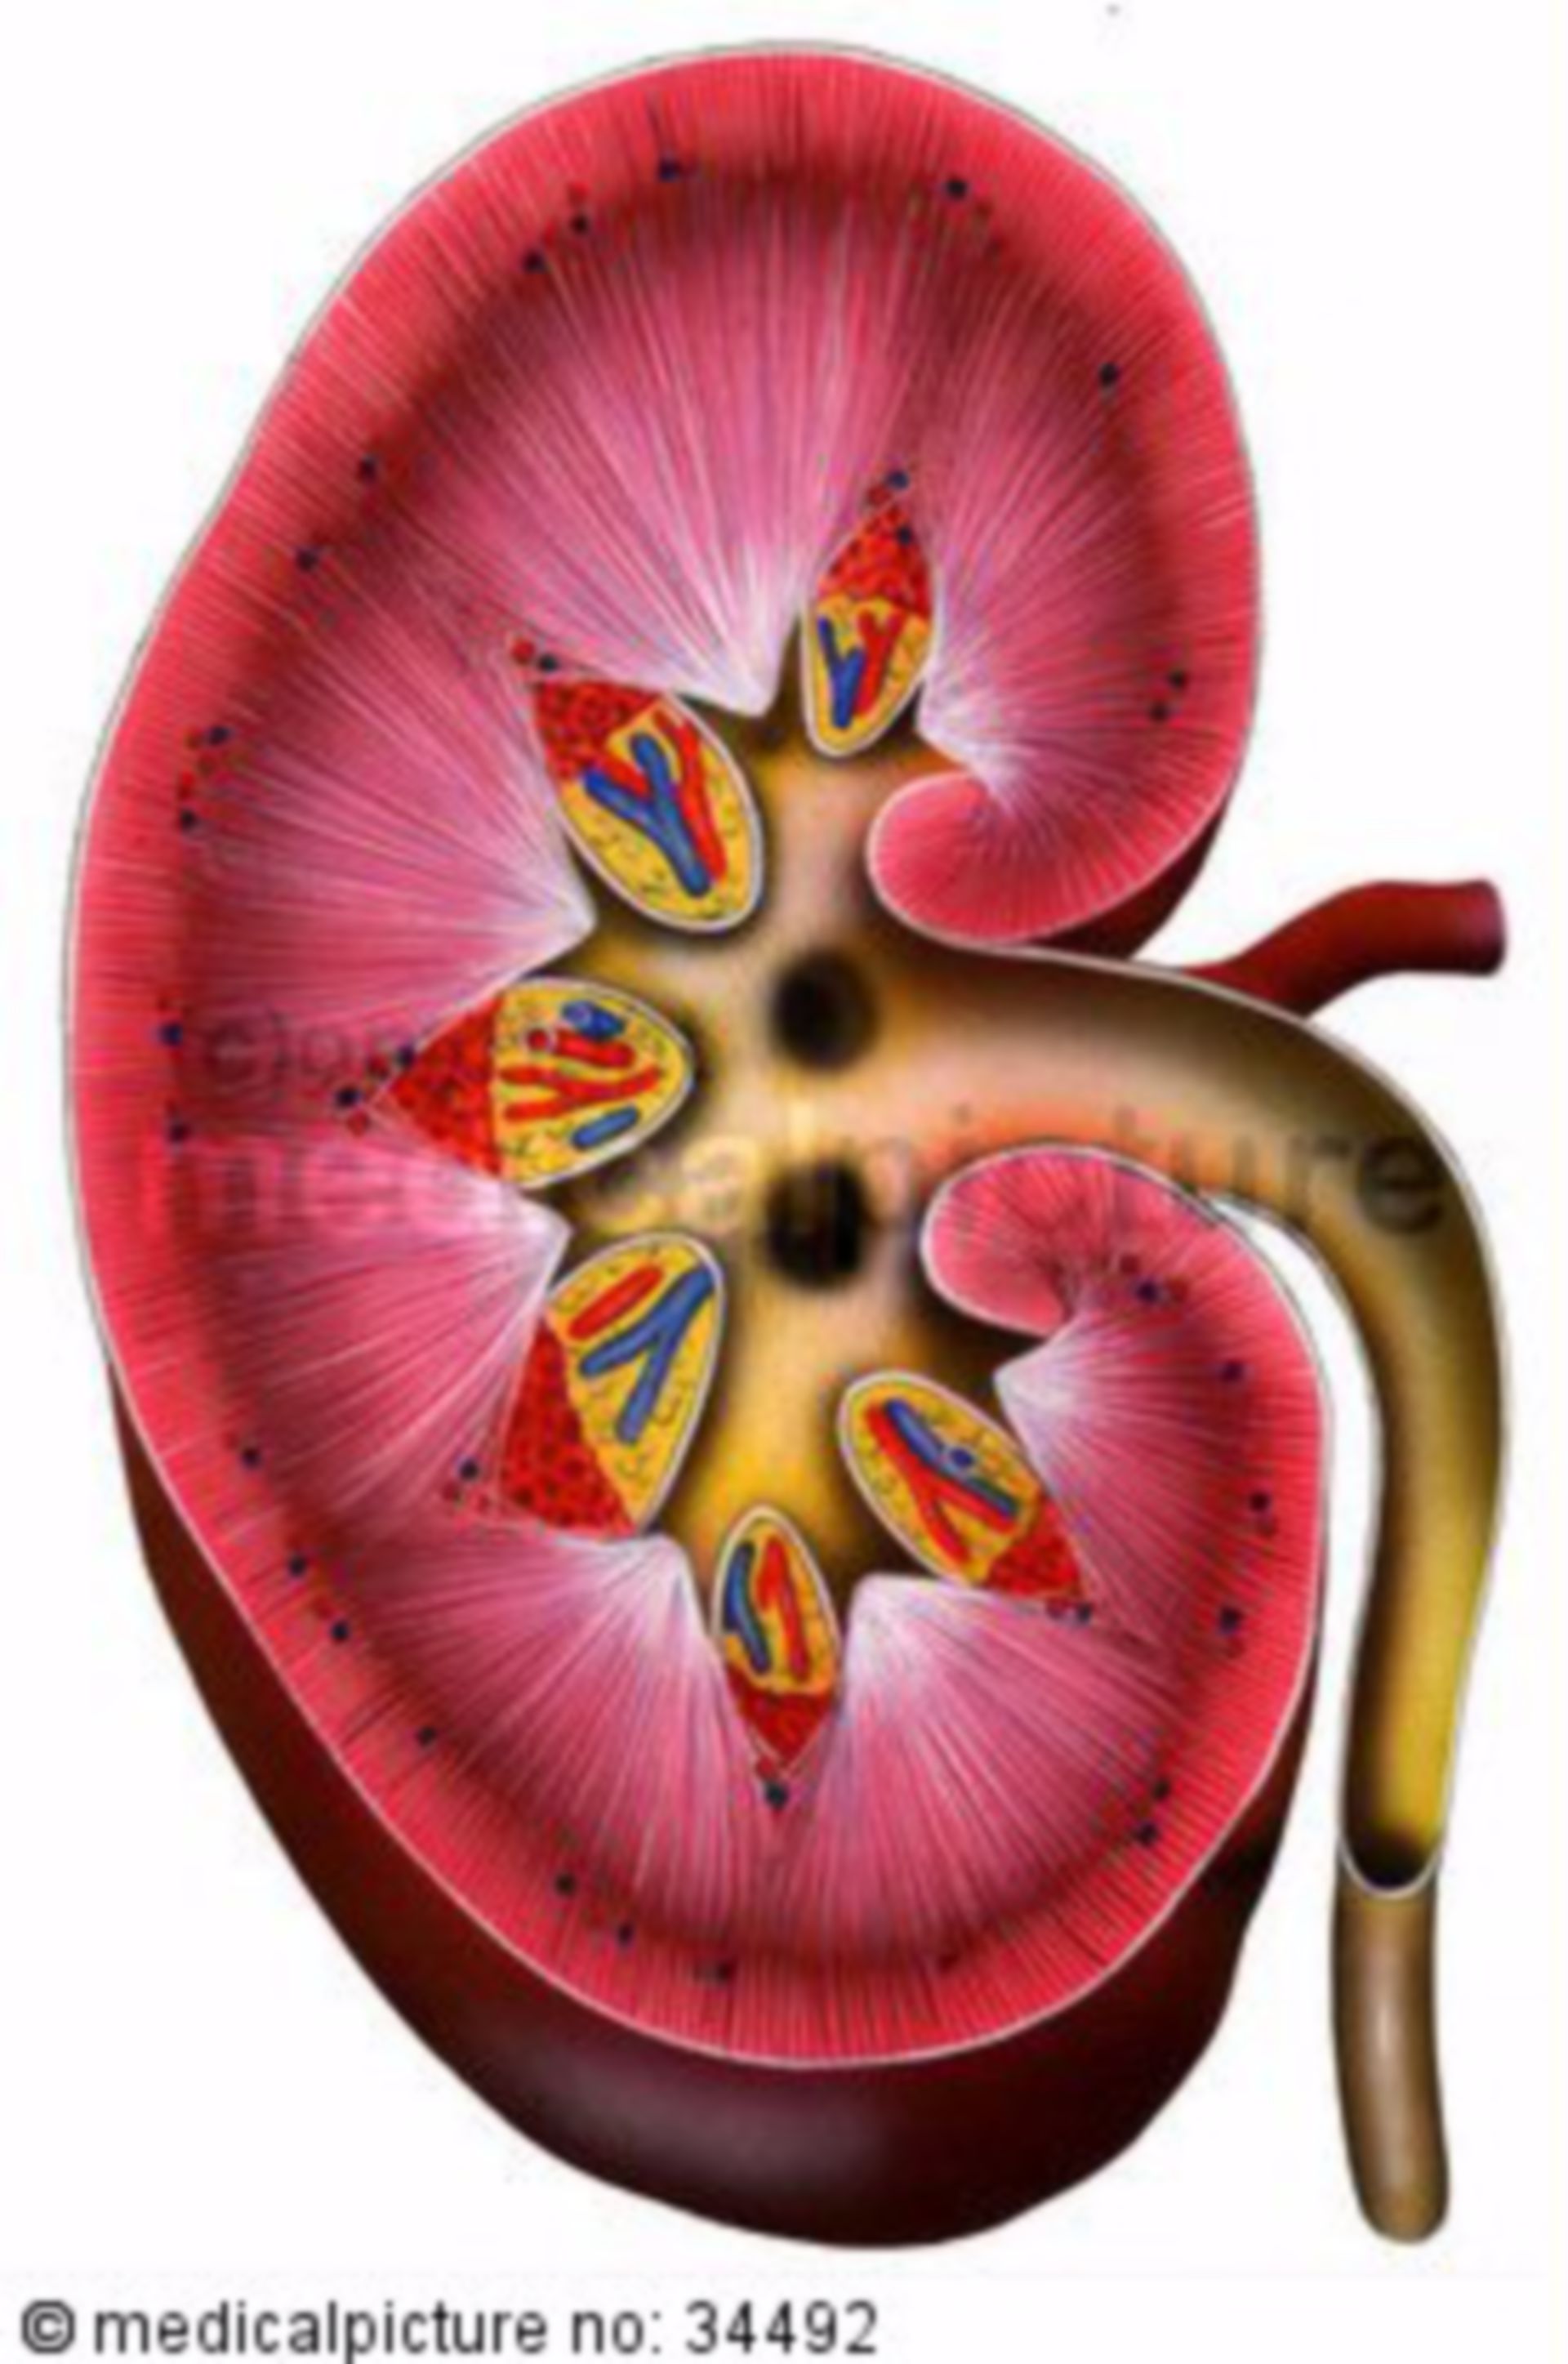 Kidney in cross-section